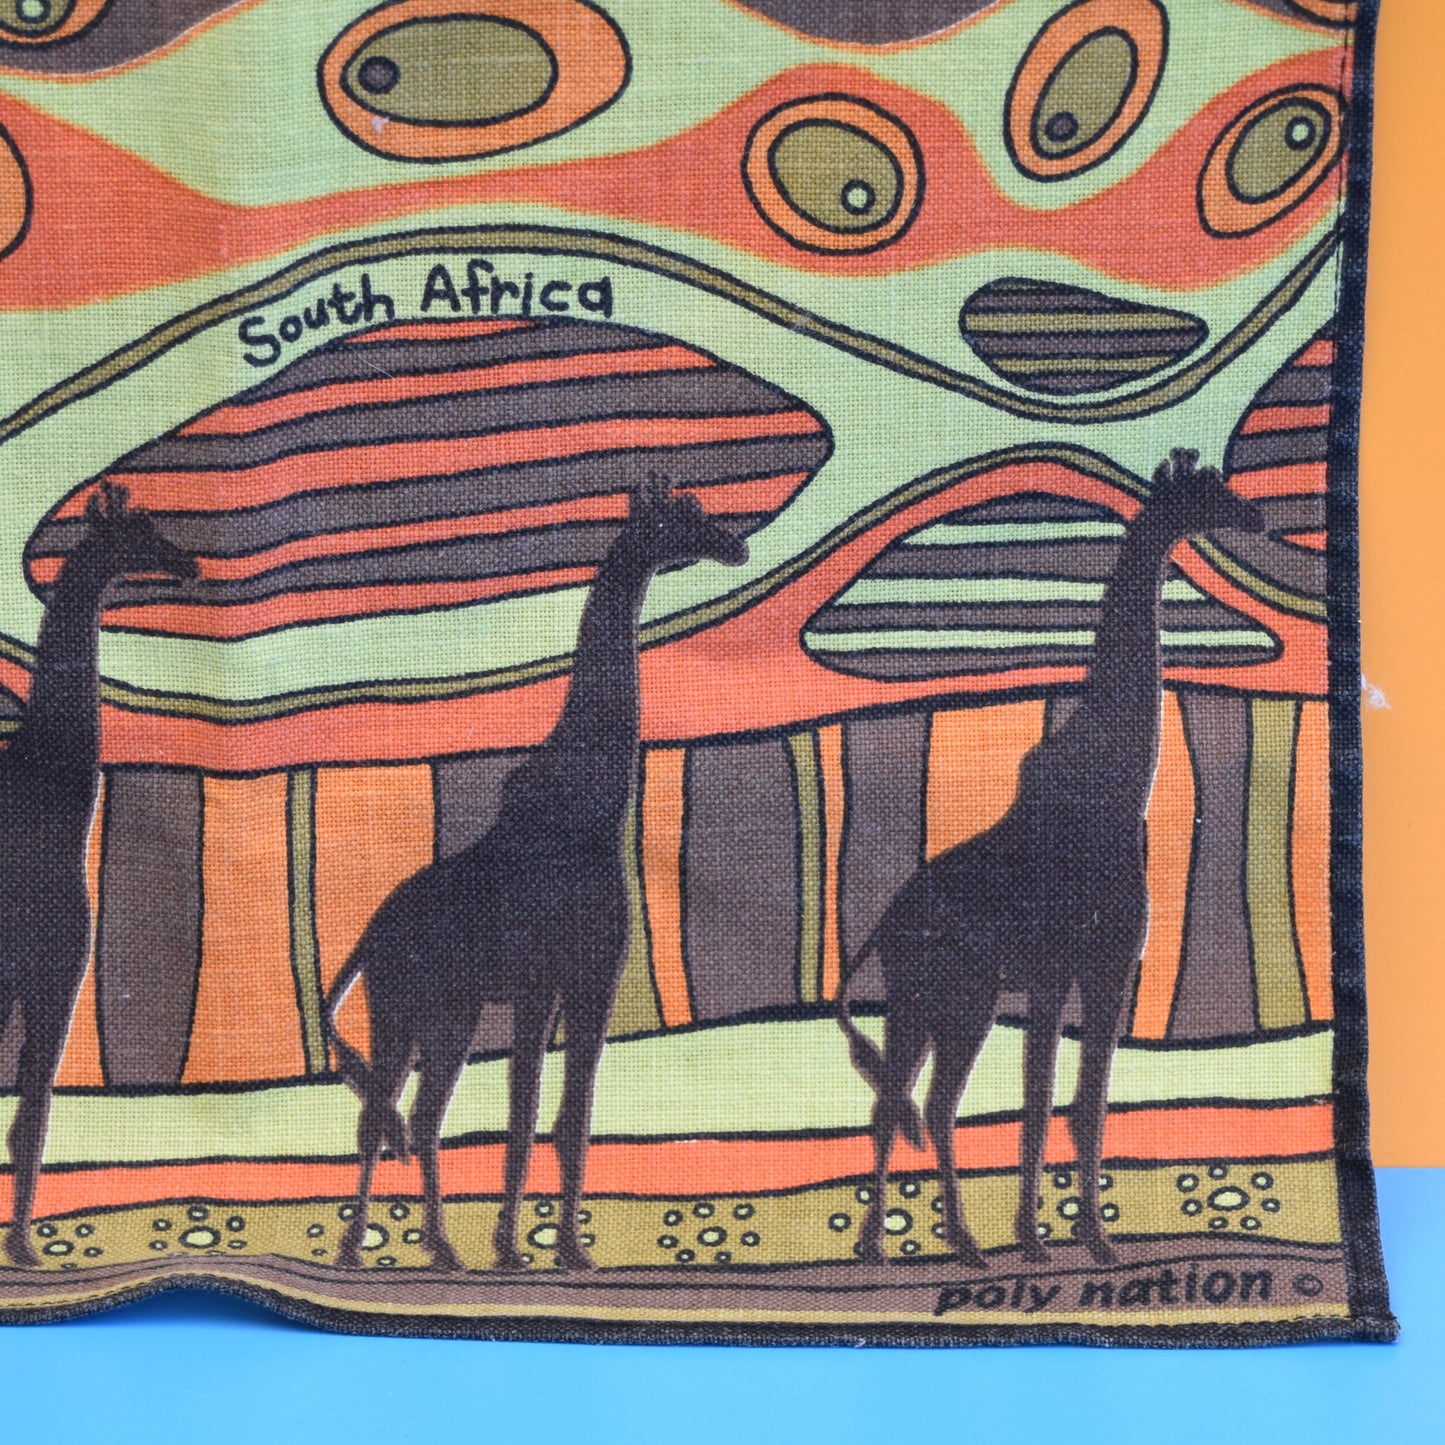 Vintage 1950s Towel / Tea Towel - South African - Giraffes